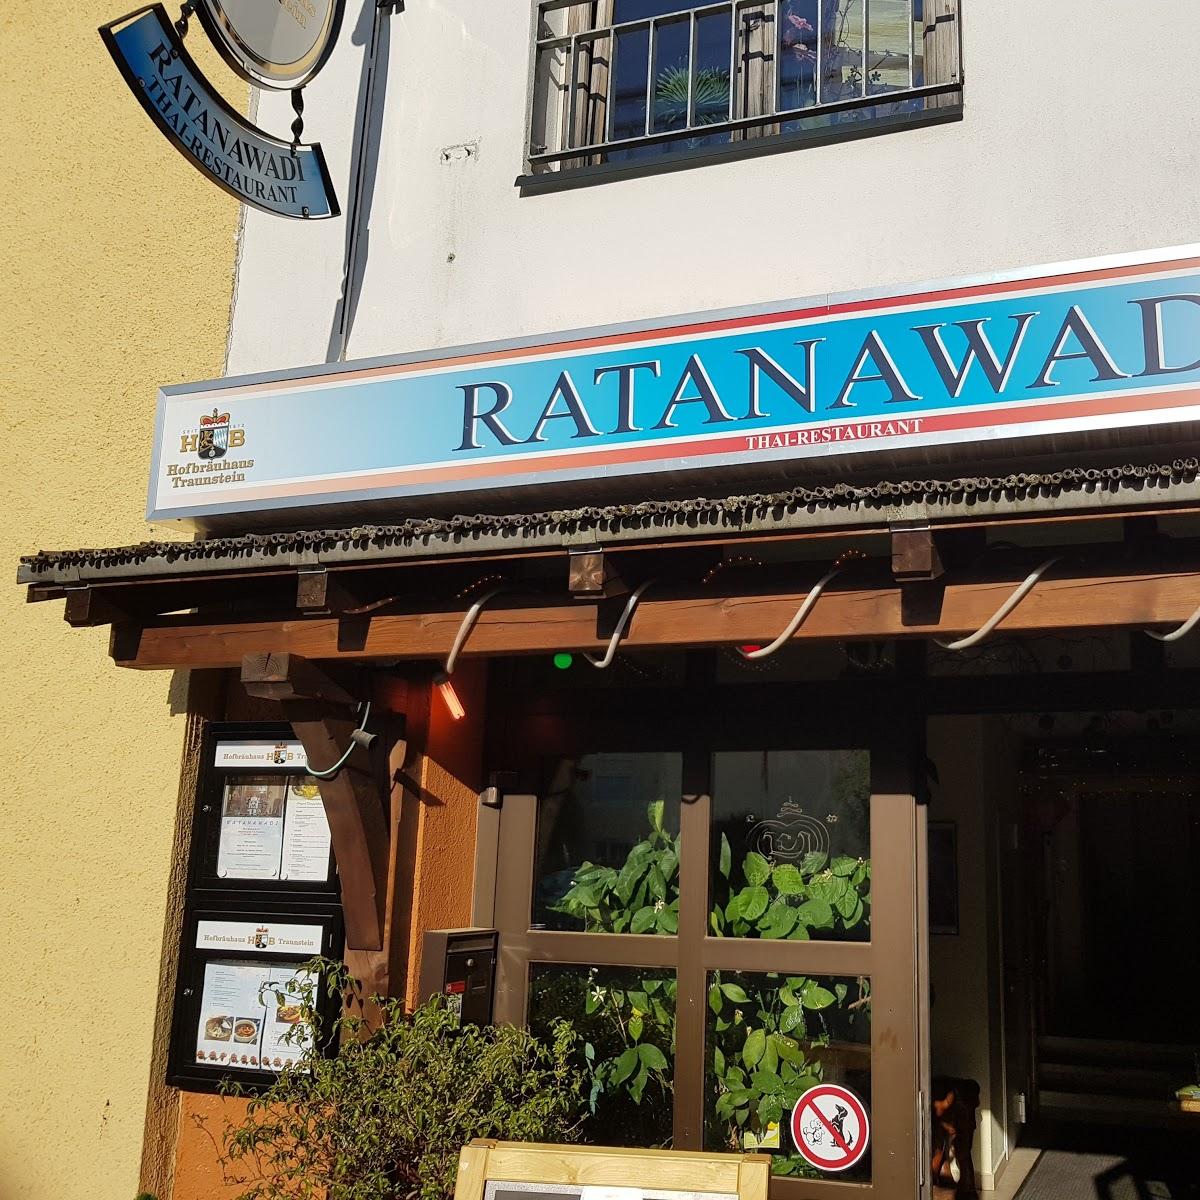 Restaurant "Ratanawadi" in  Traunstein